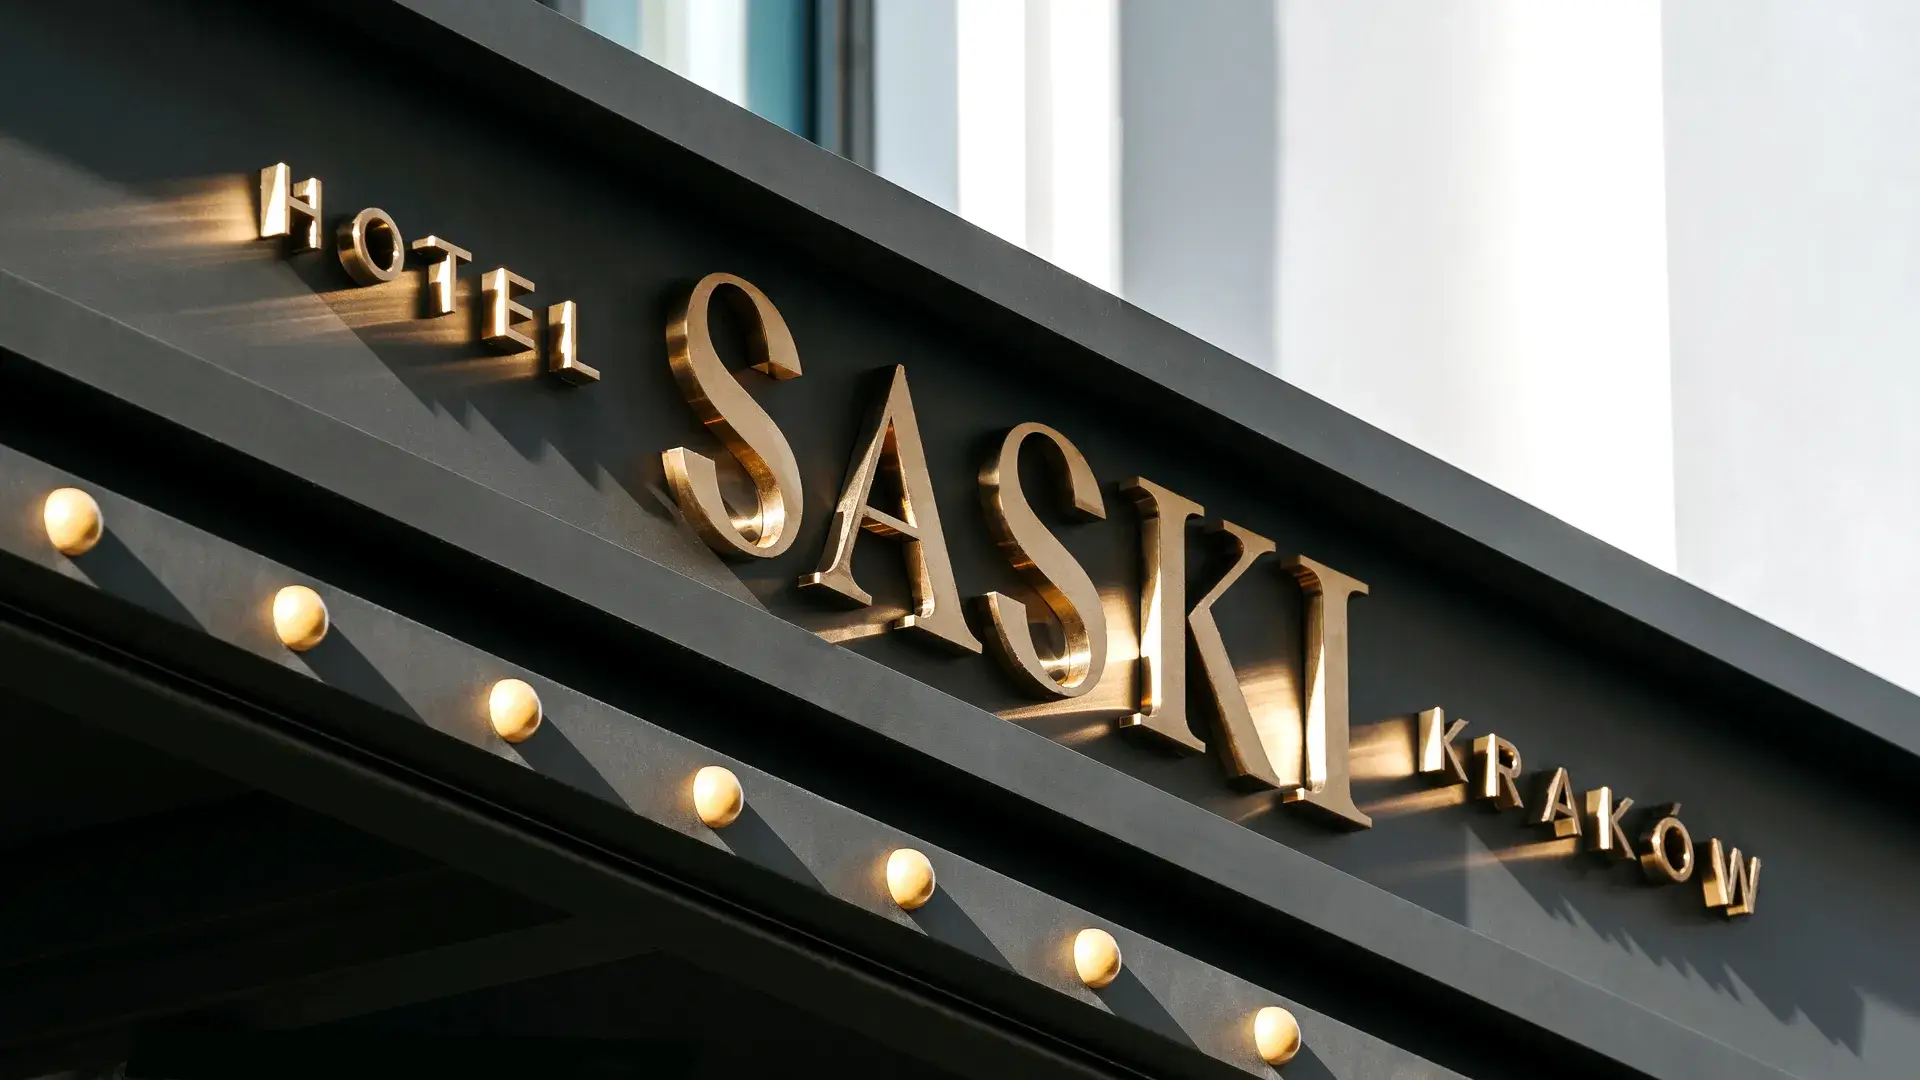 Lettres en acier inoxydable brossé doré à l'extérieur du bâtiment de l'hôtel Saski